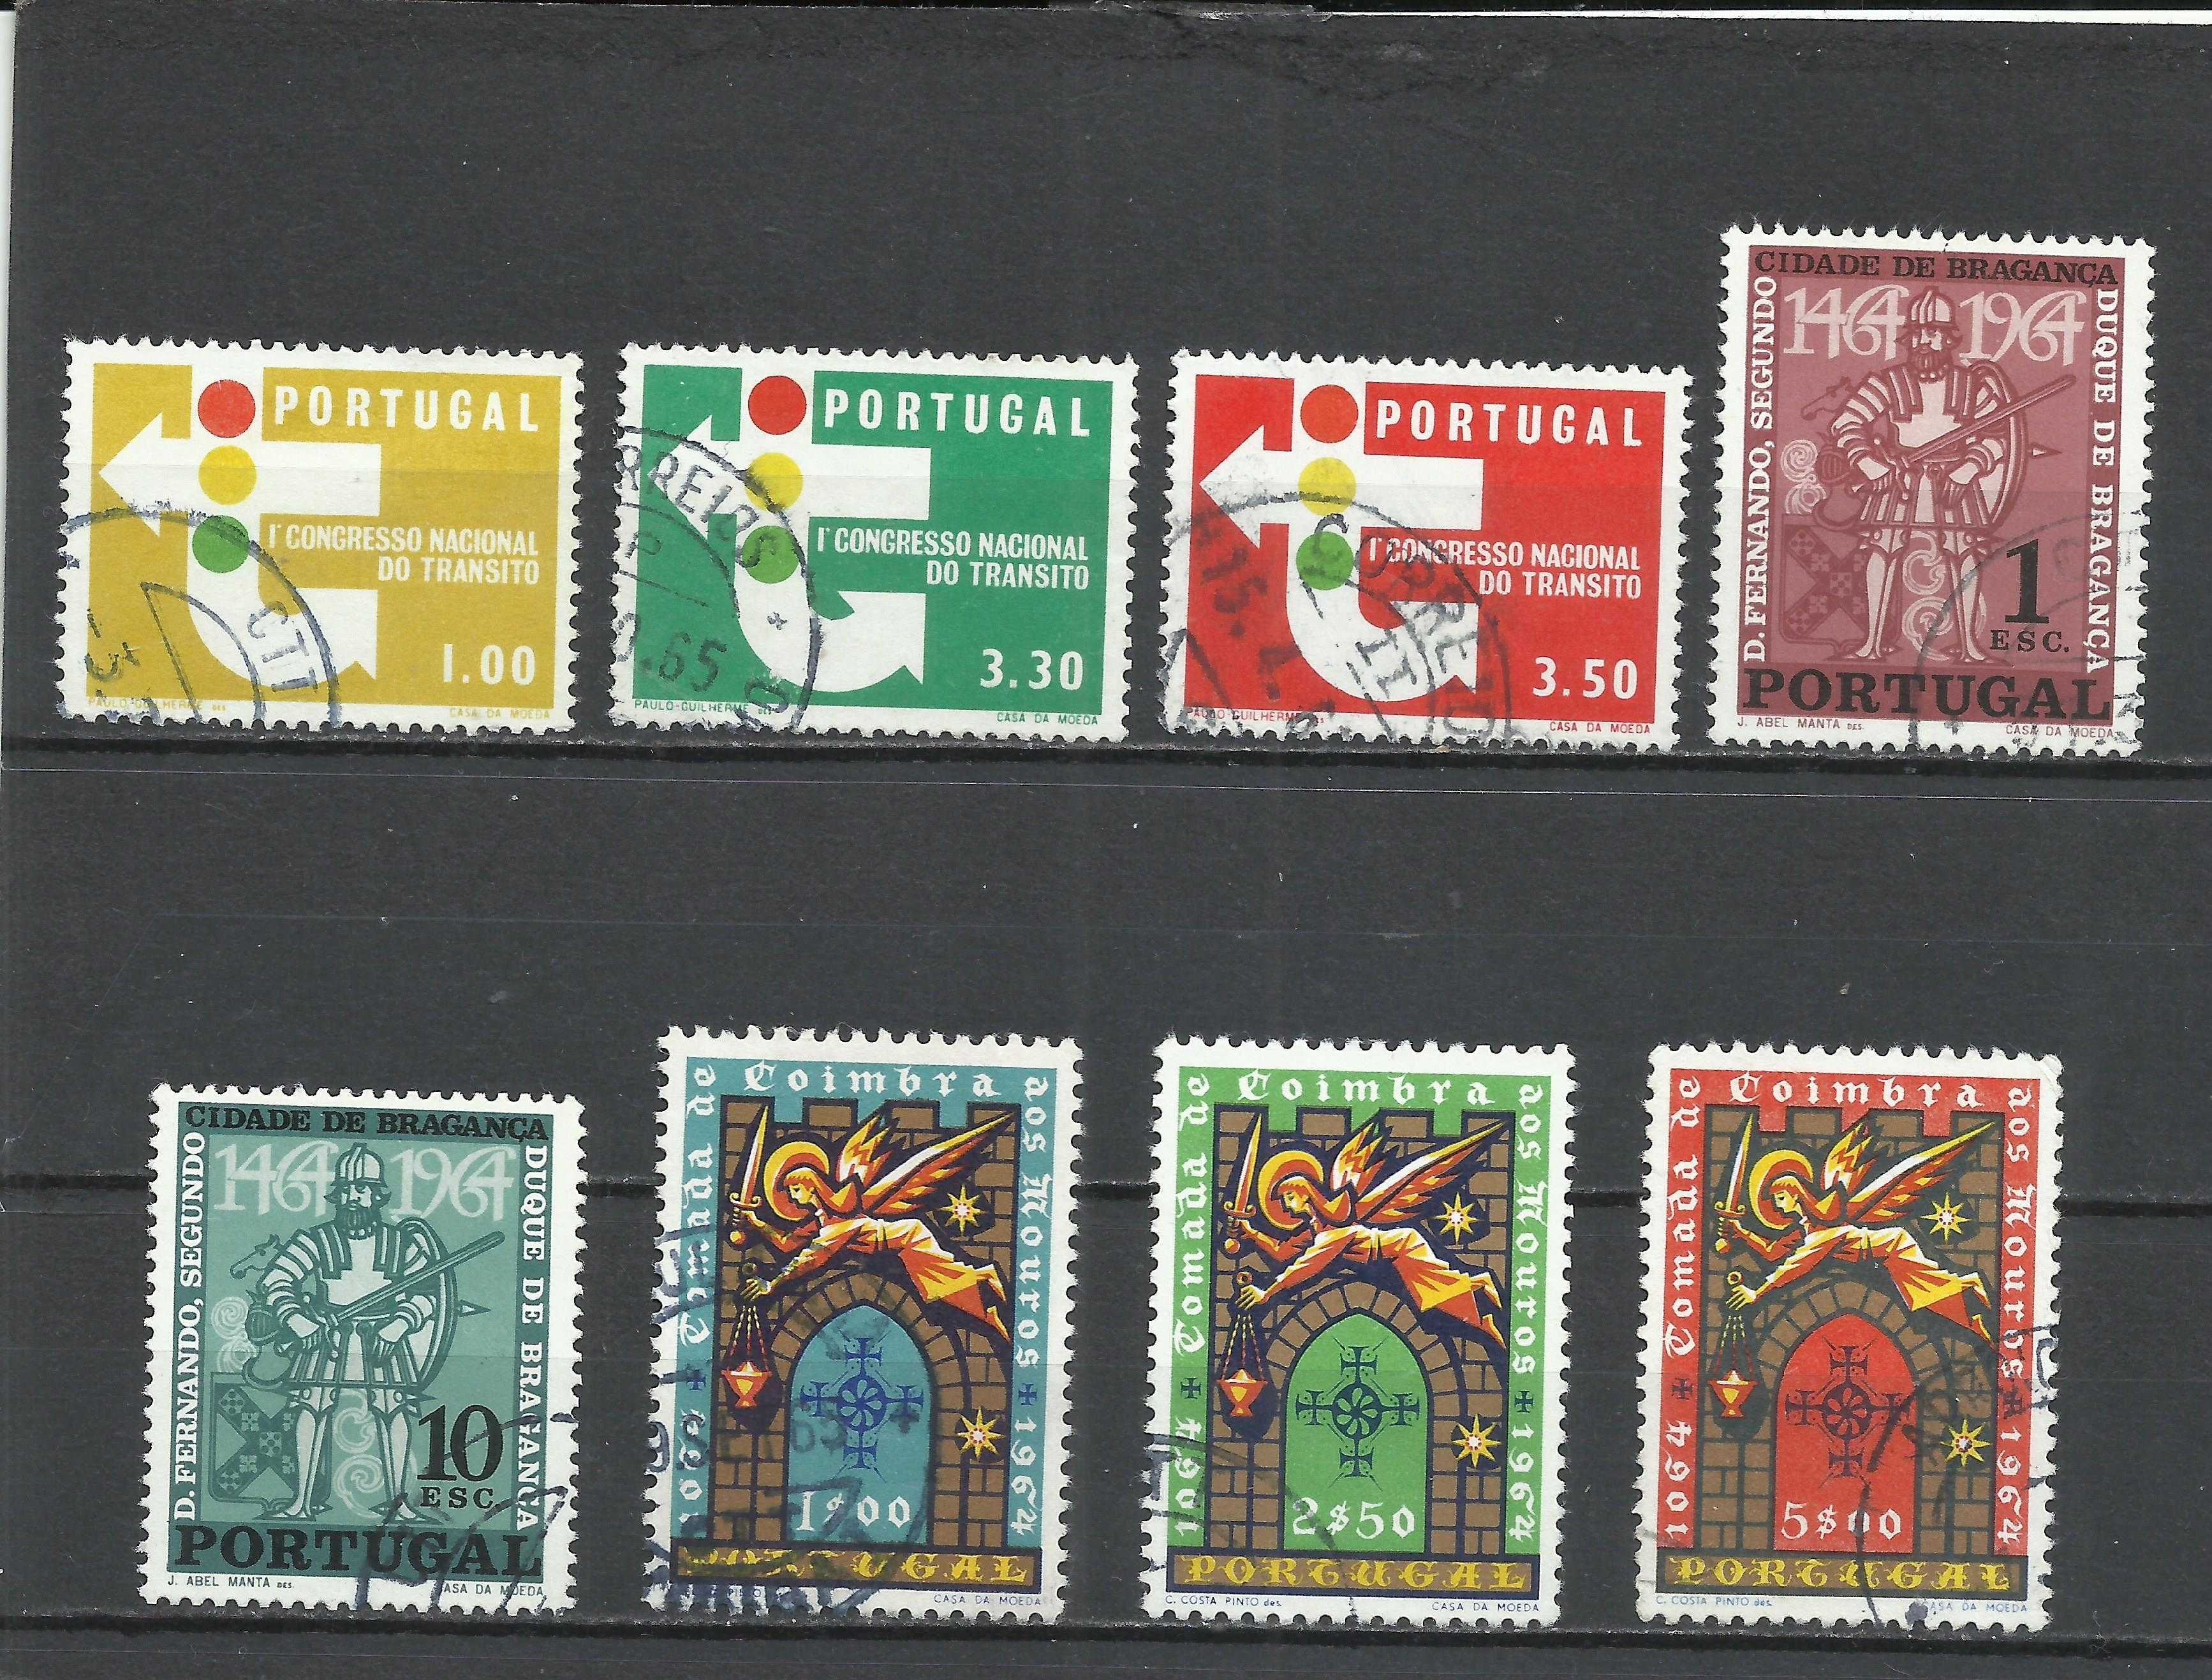 Selos portugueses – Ano incompleto de 1965 - usados